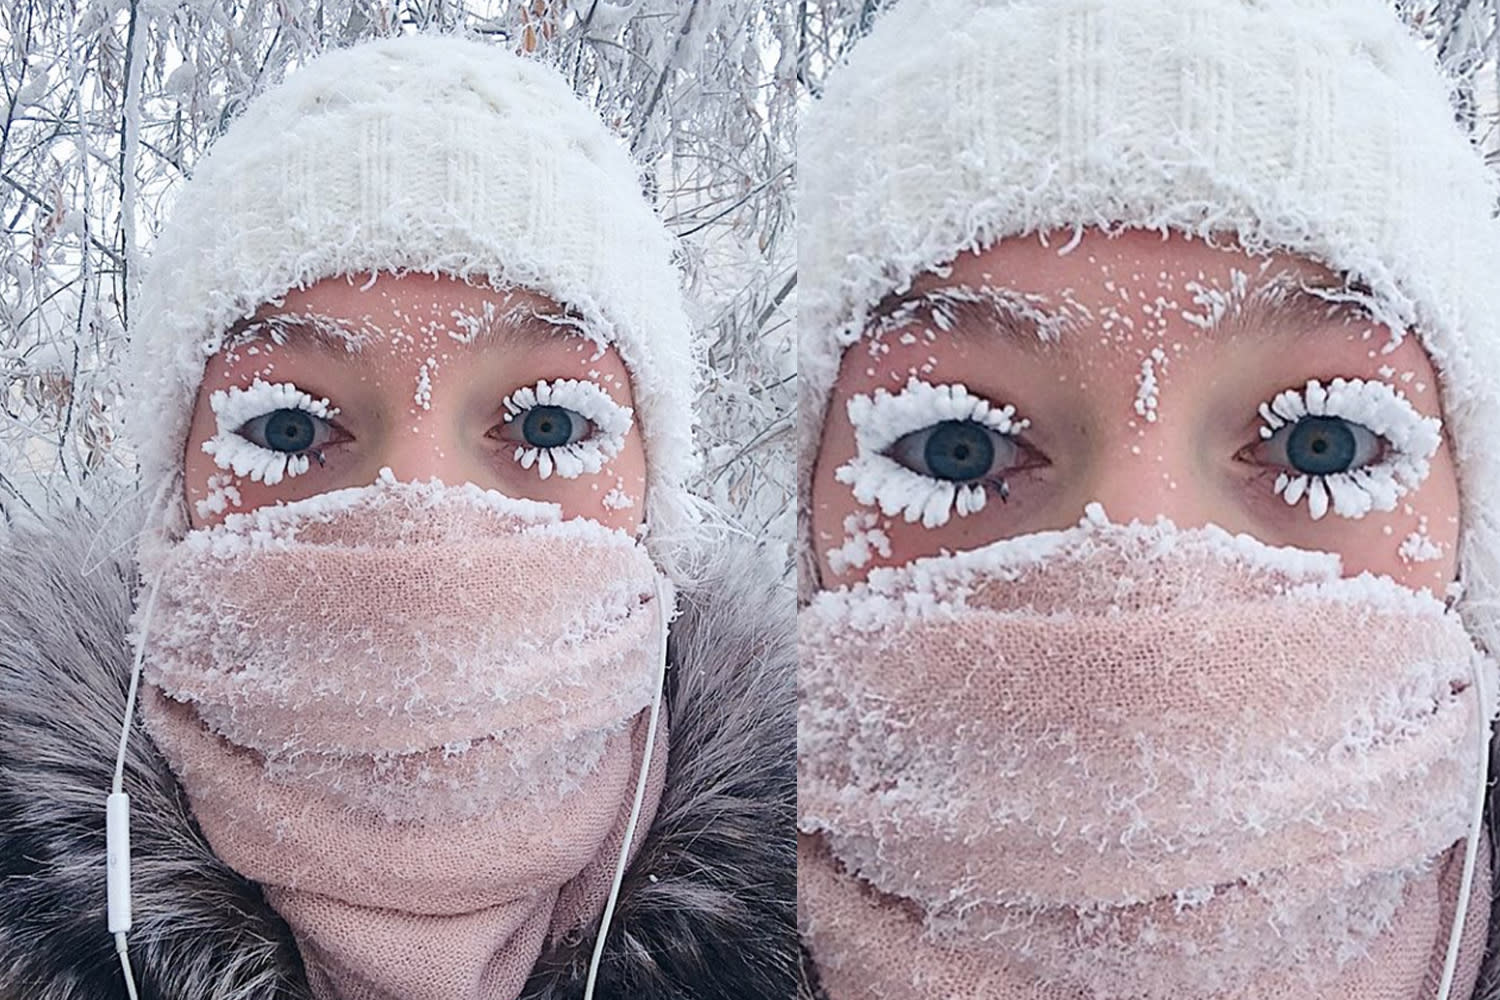 Russian woman takes frozen selfie in drastically low temps - 1500 x 1000 jpeg 316kB